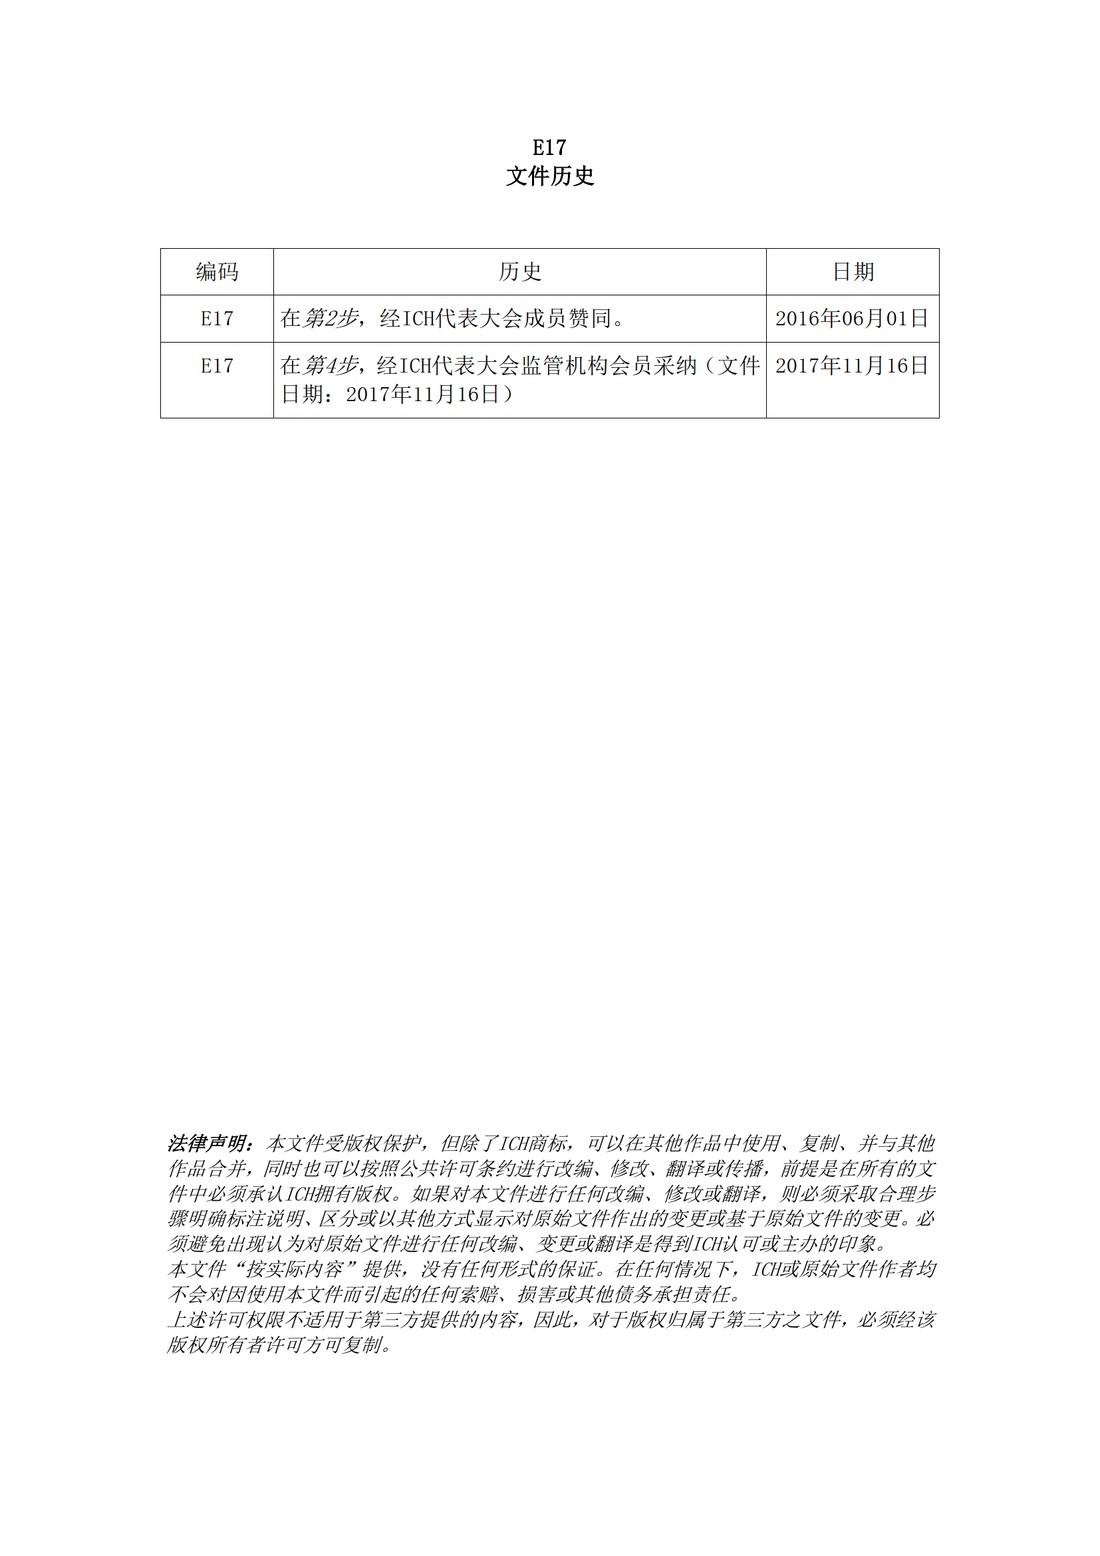 E17多区域临床试验计划与设计的一般原则（中文翻译公开征求意见稿）_02.jpg